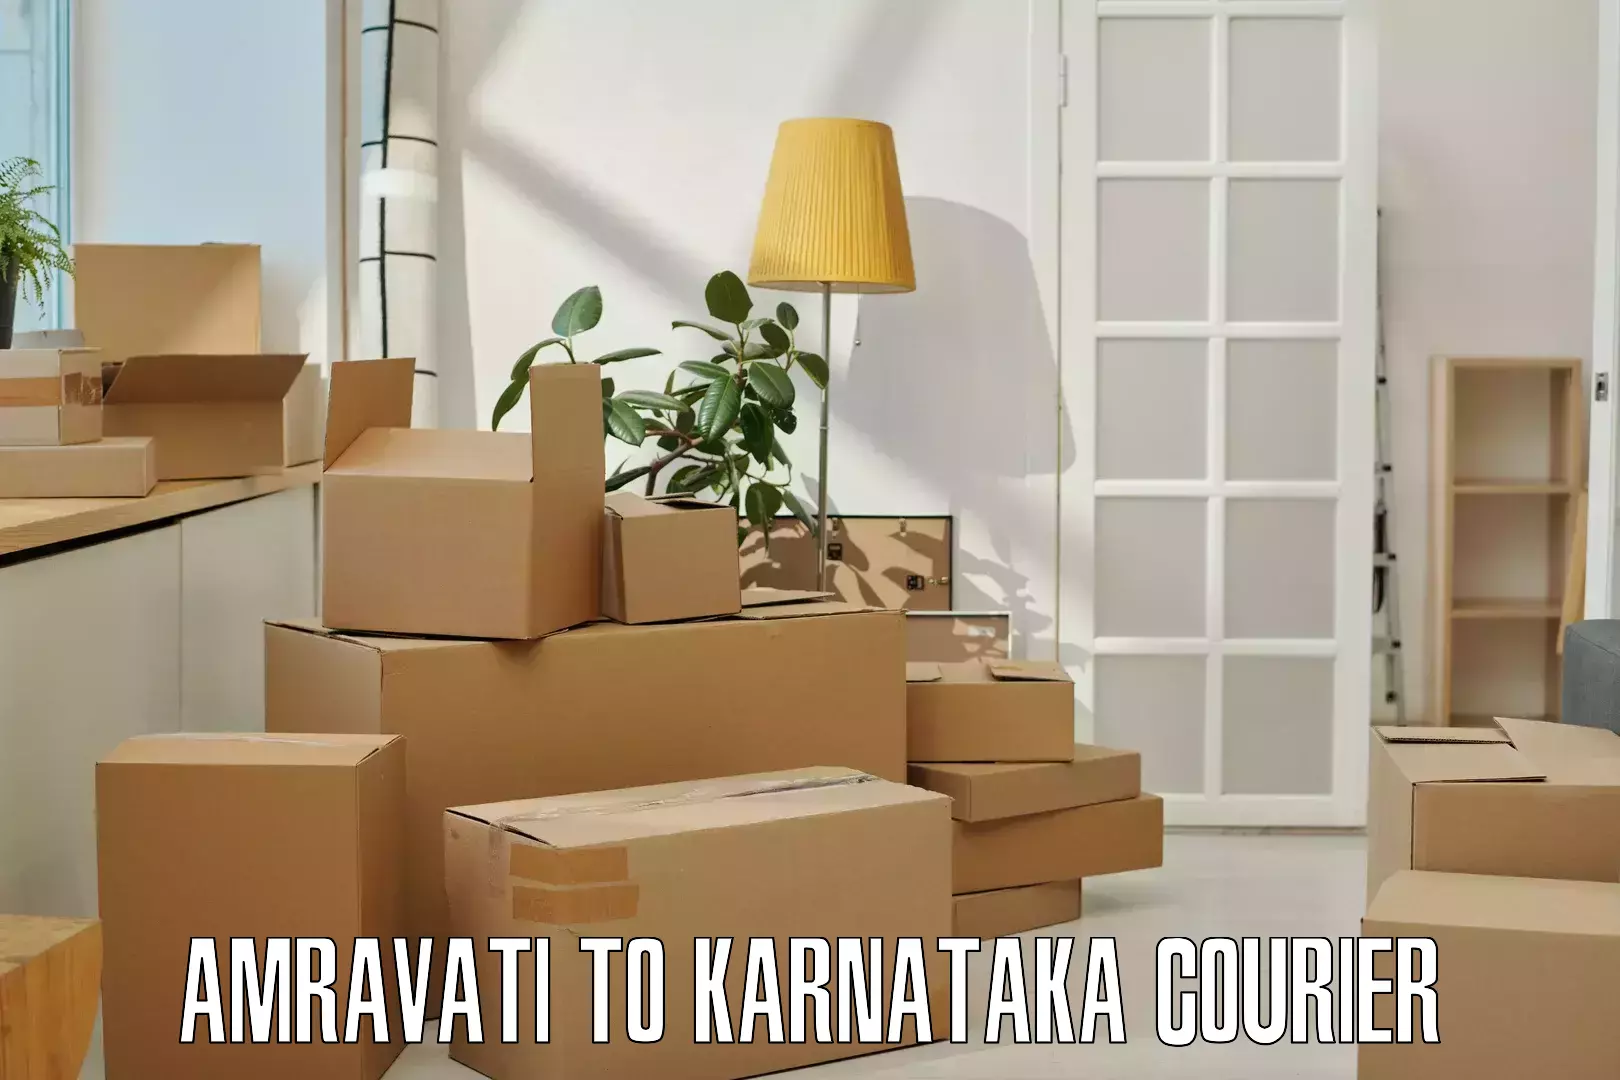 Courier service partnerships Amravati to Mannaekhelli